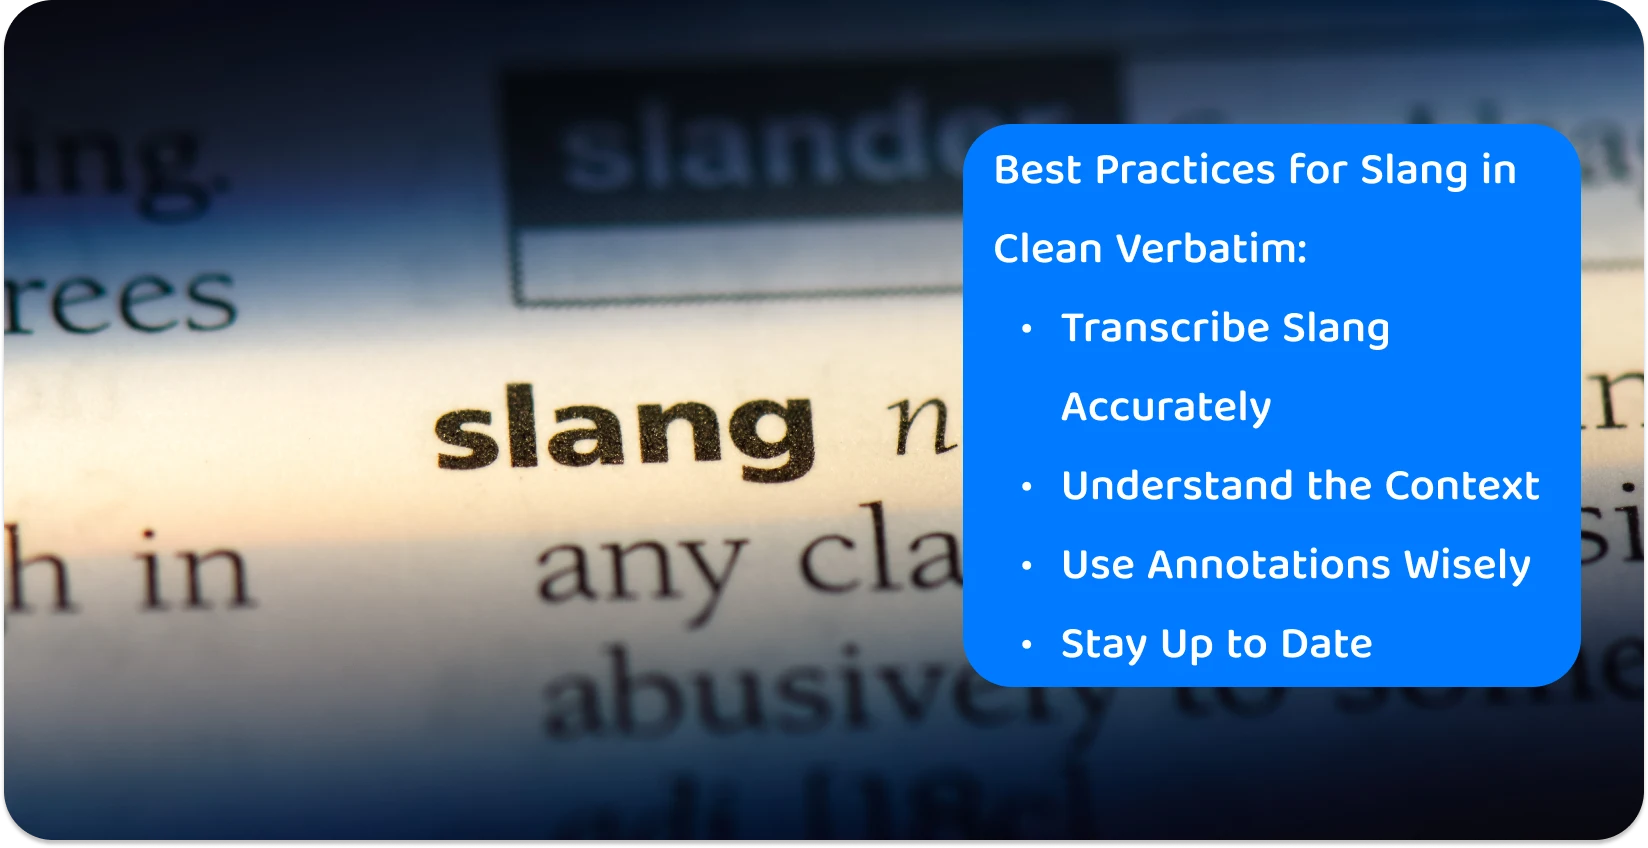 Zbliżenie na słowo "slang" w słowniku, podkreślające precyzję potrzebną w praktykach transkrypcji dla współczesnego języka potocznego.